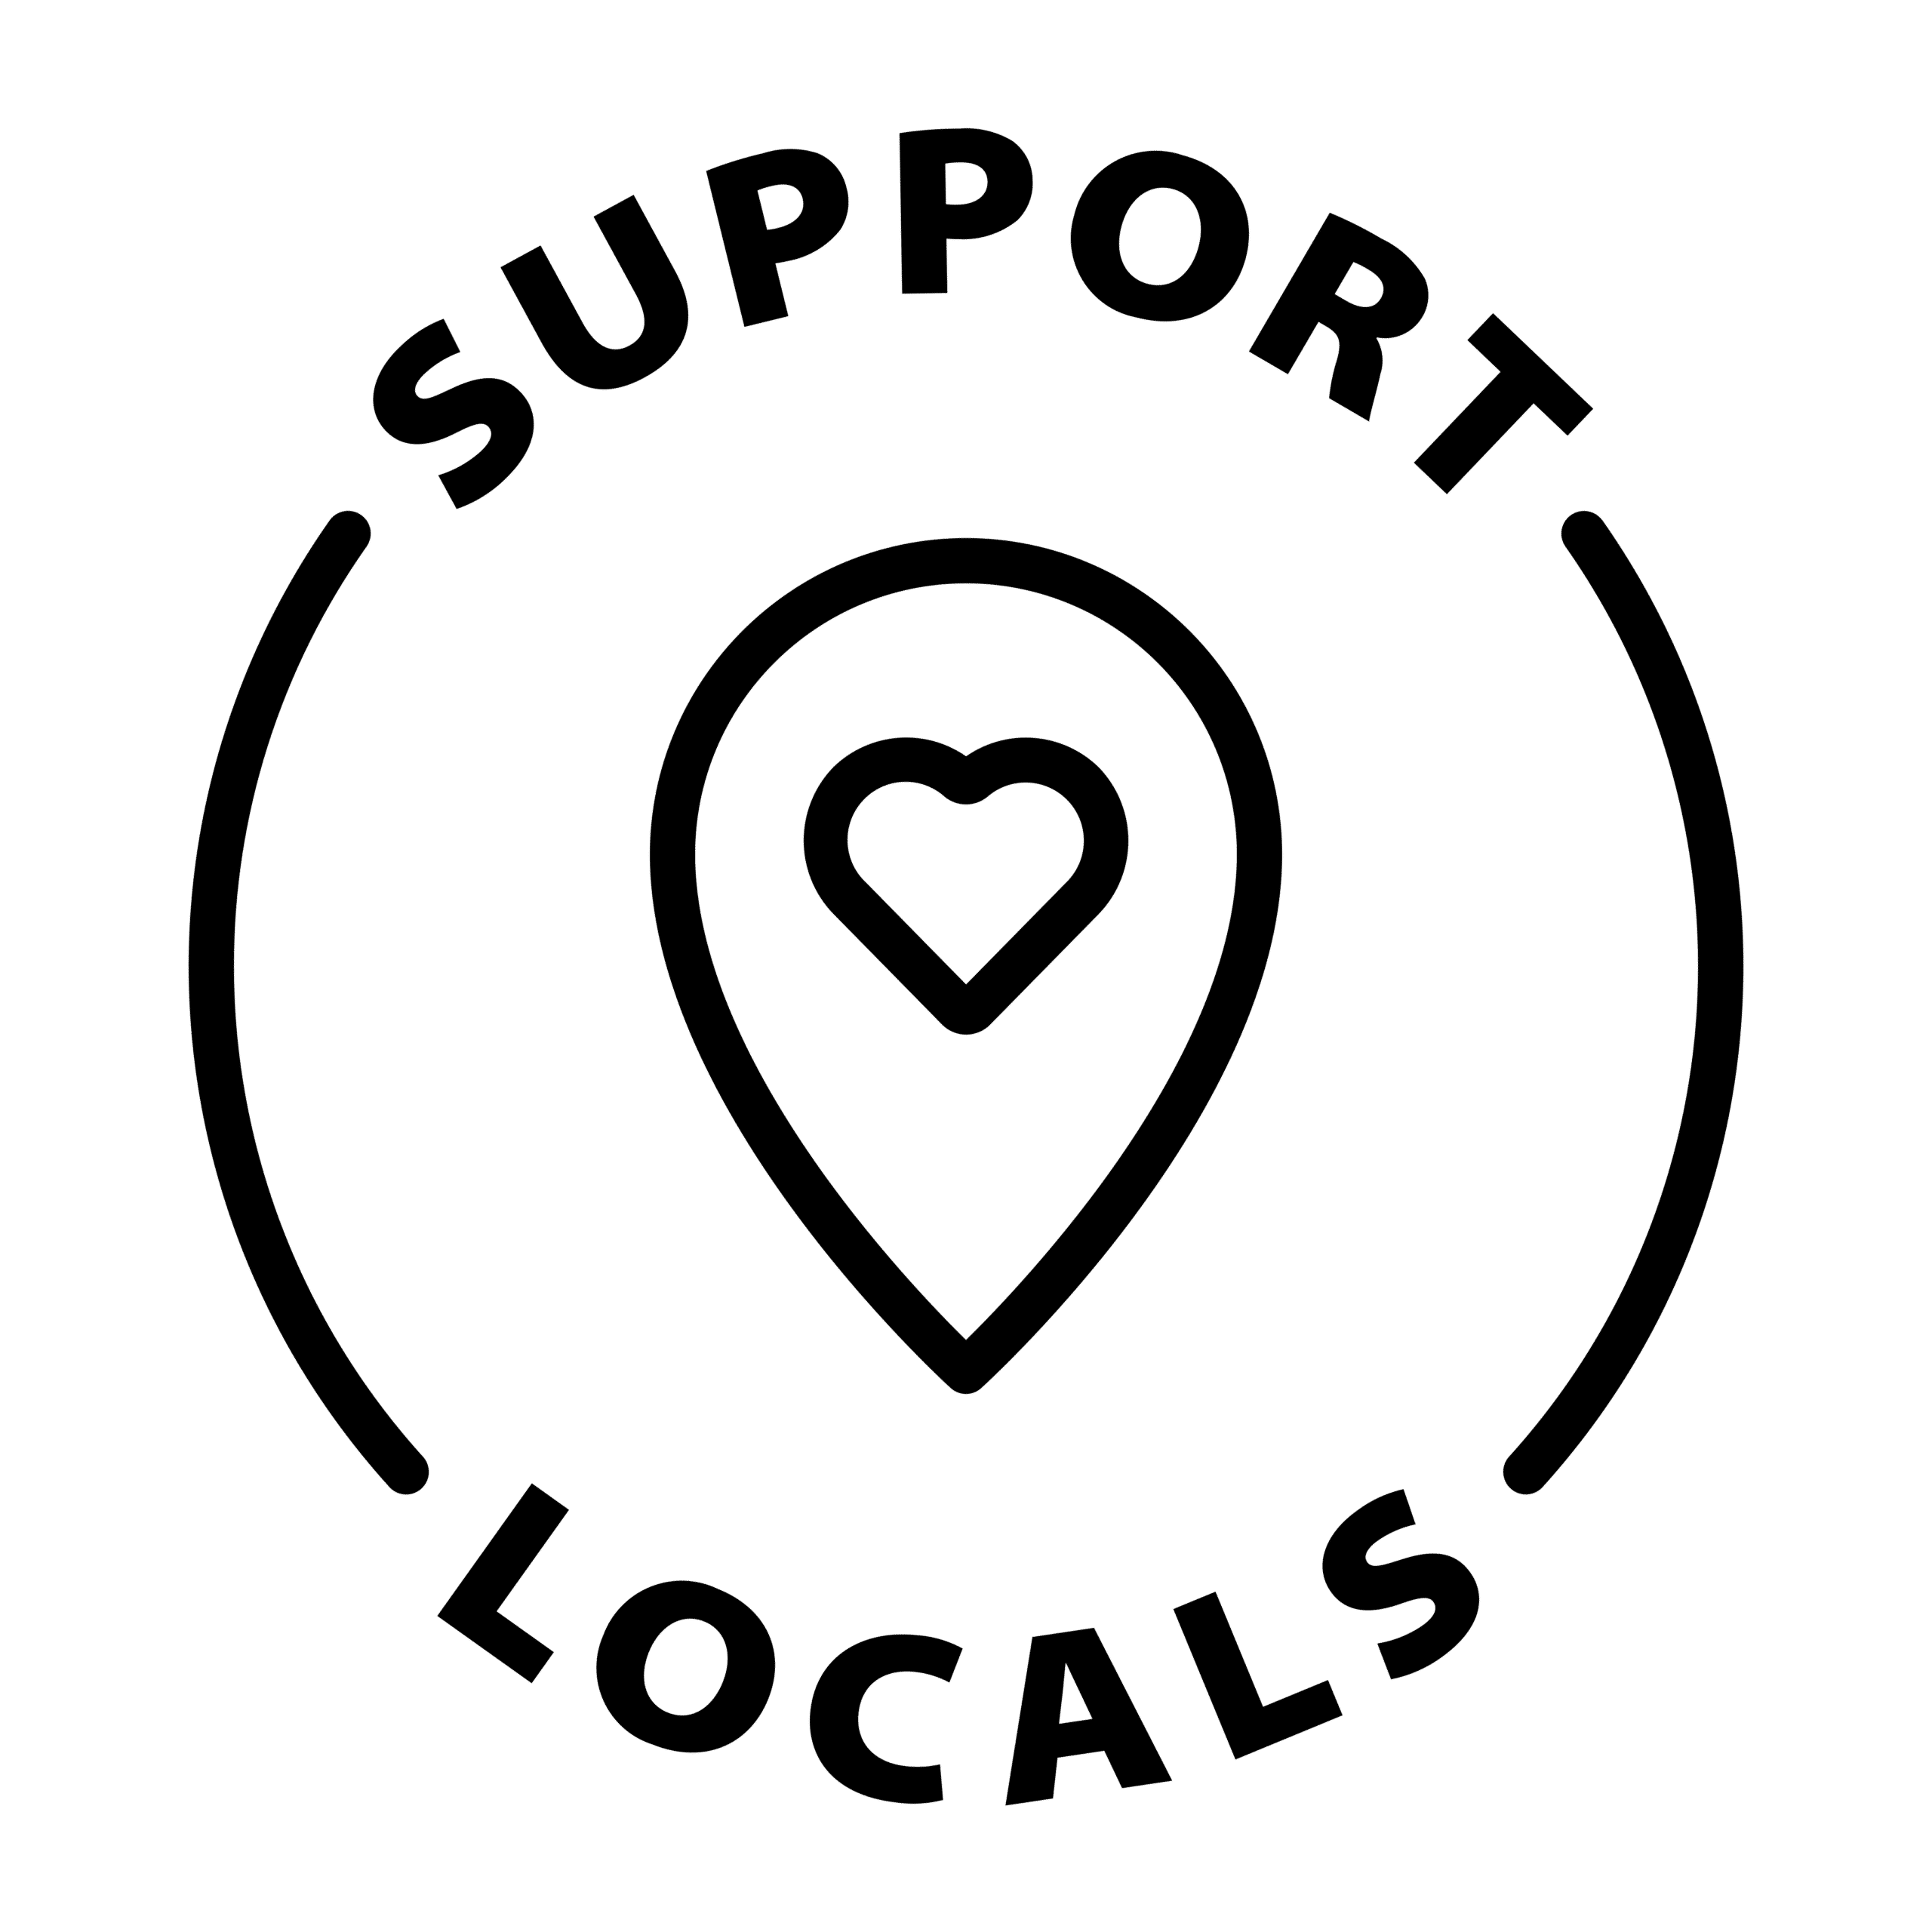 Support Locals